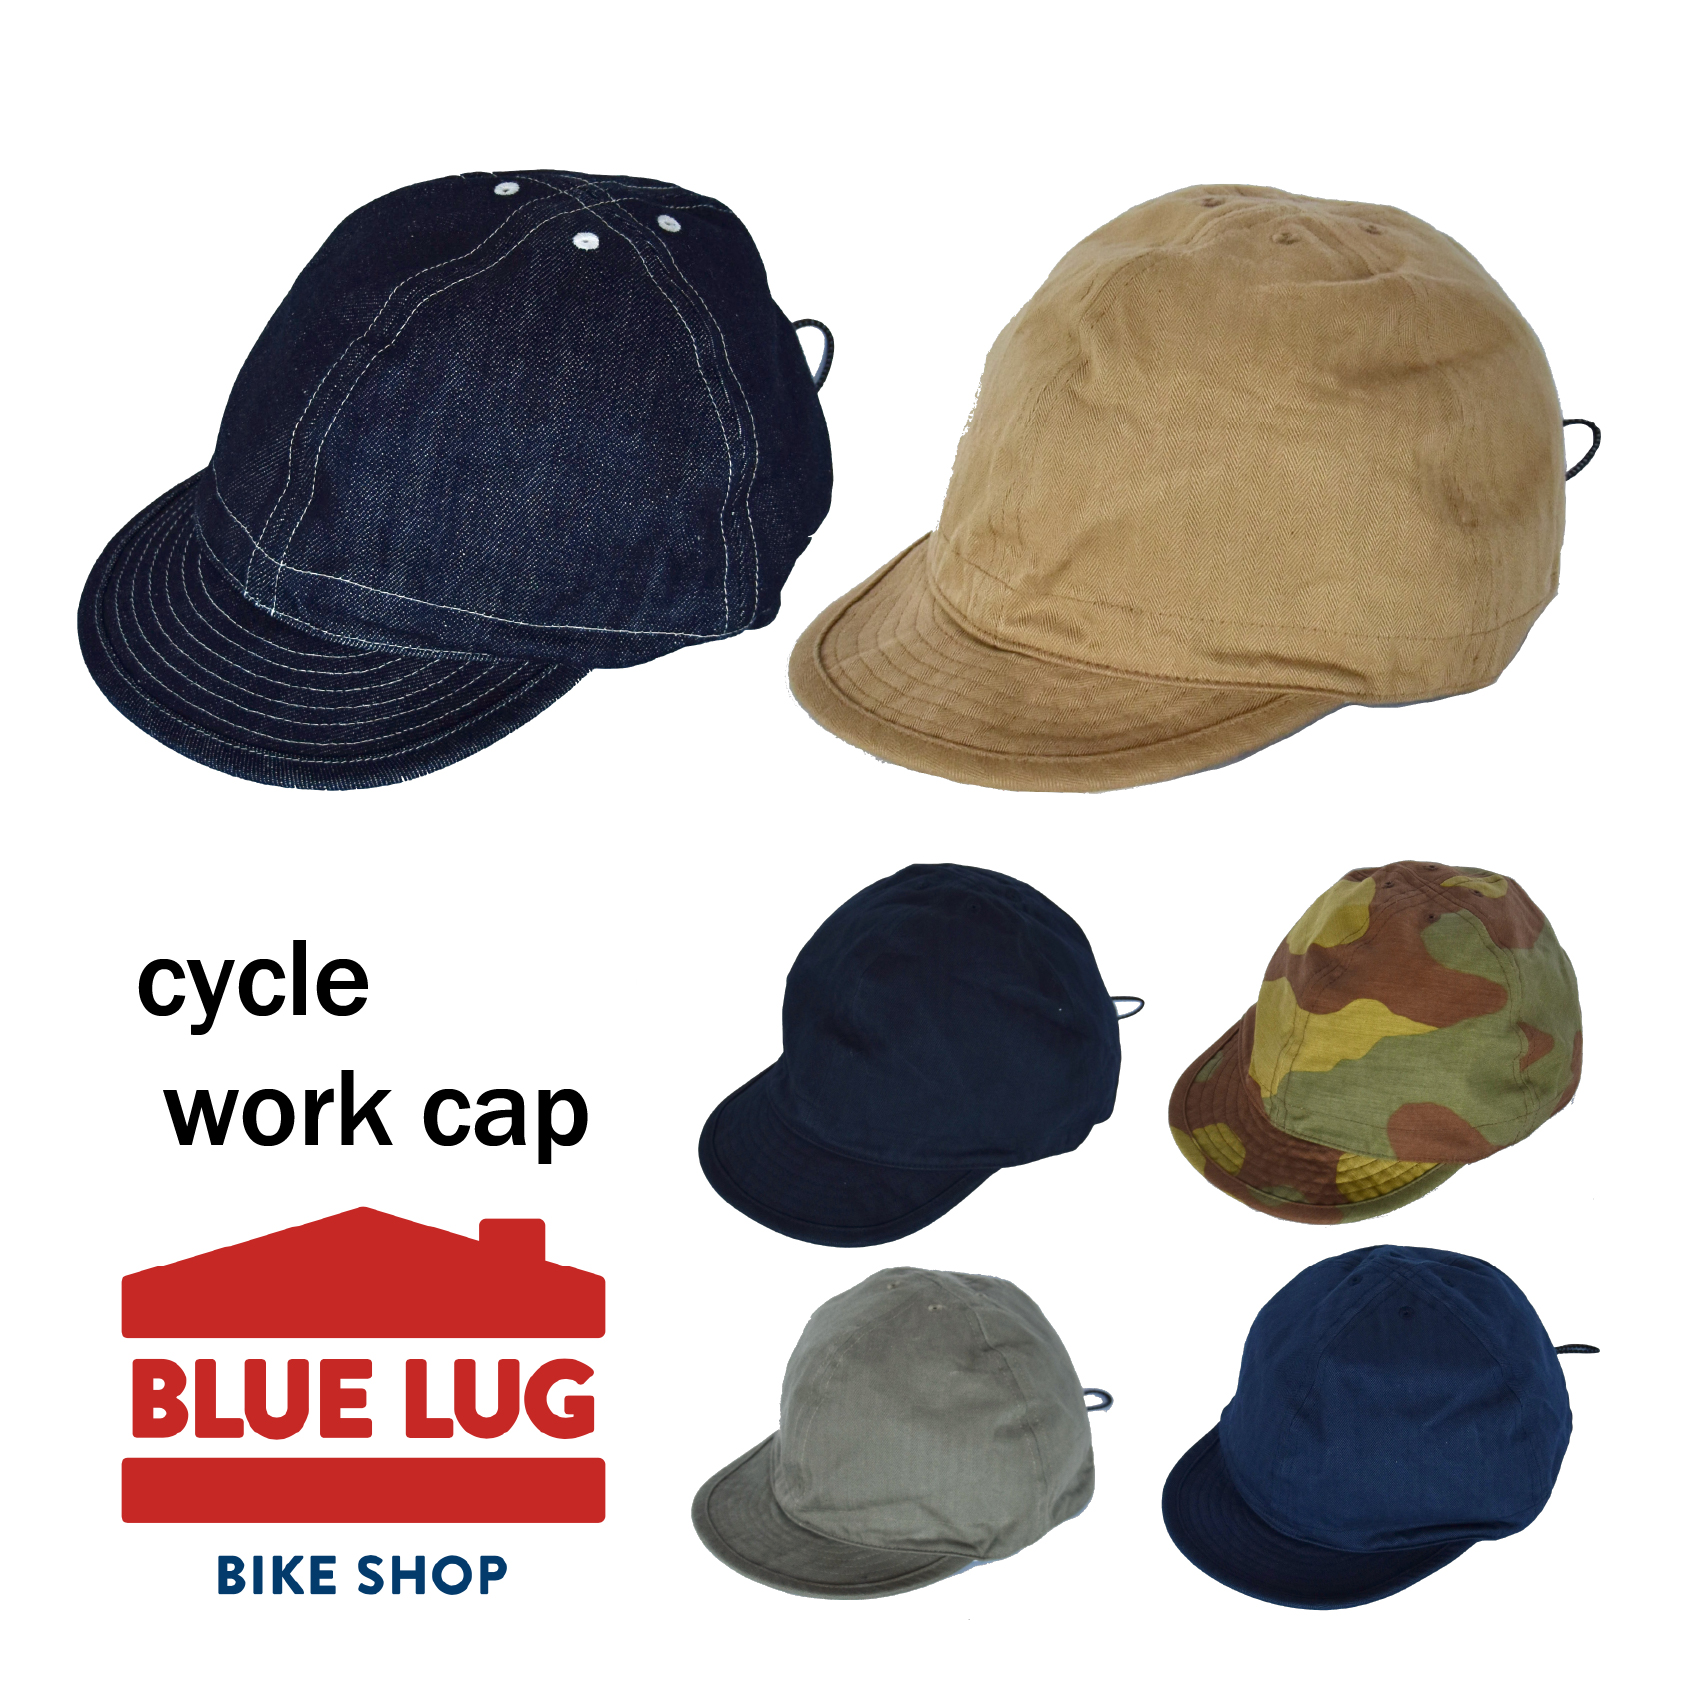 *BLUE LUG* cycle work cap (indigo)